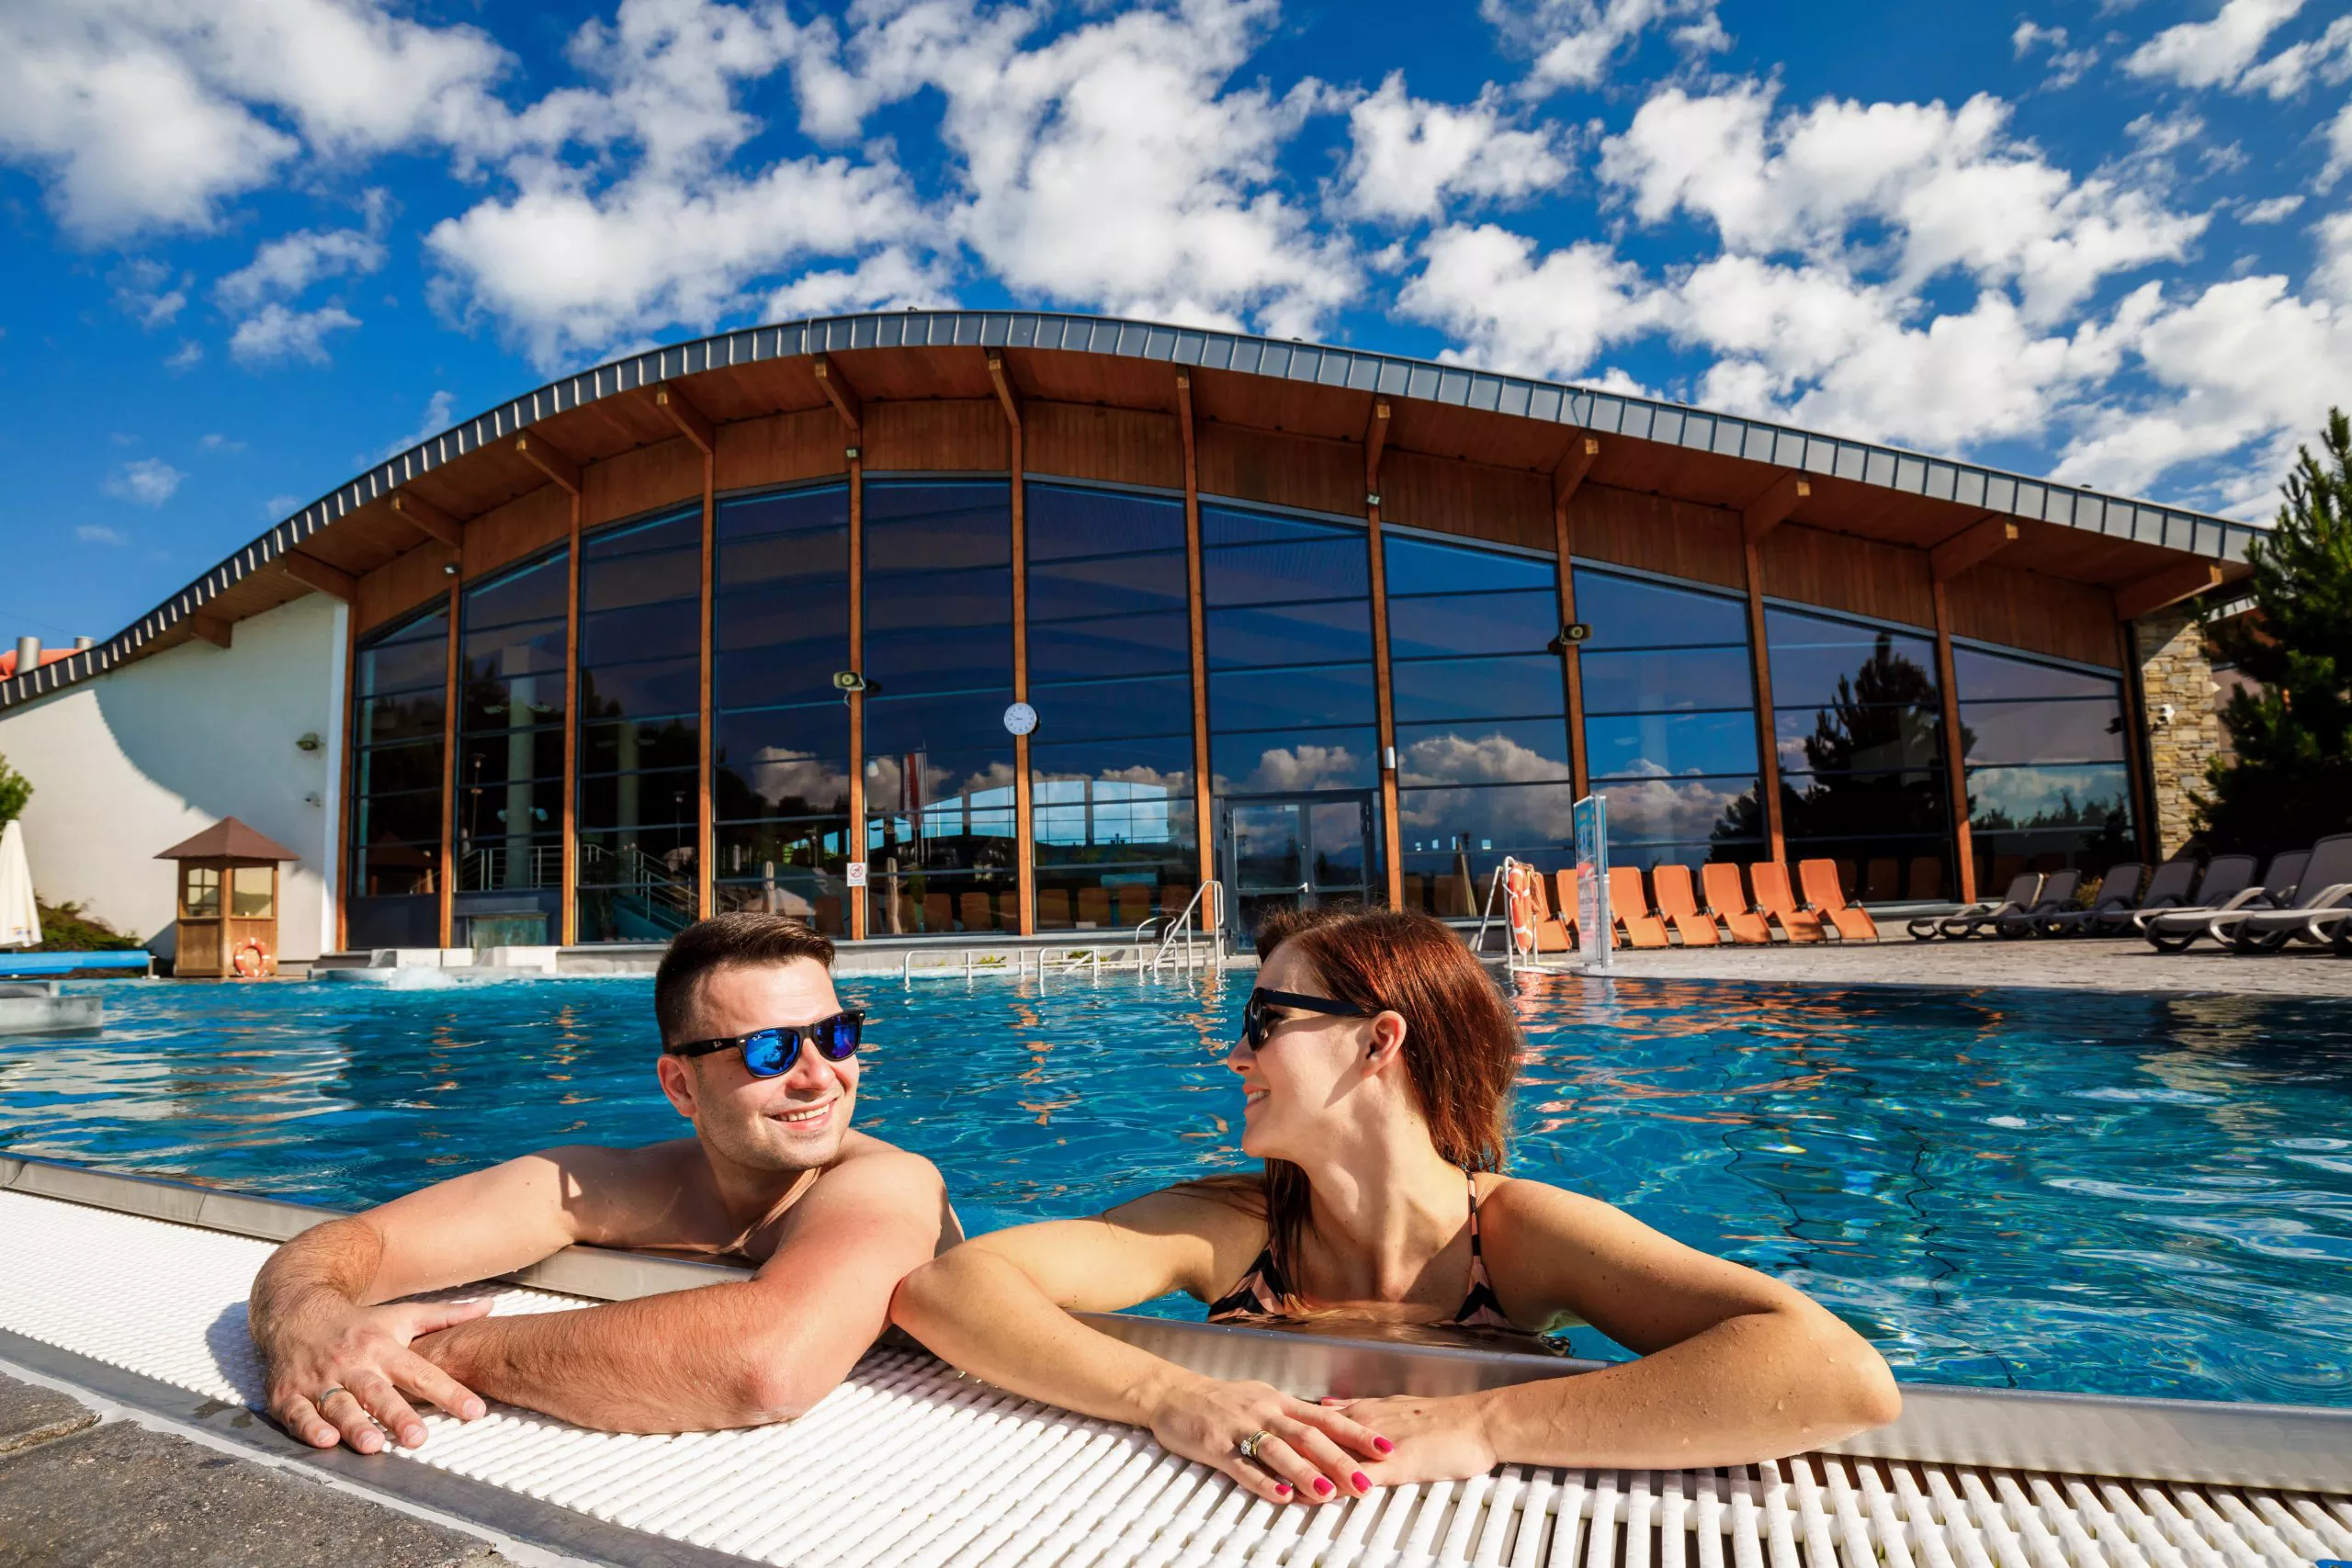 Blick auf ein junges Paar, einen Mann und eine Frau mit Sonnenbrillen, die sich in einem Pool mit Thermalwasser entspannen. Im Hintergrund befindet sich ein gläsernes Gebäude des Thermalbads Bania. Der Himmel ist blau mit weißen Schäfchenwolken.